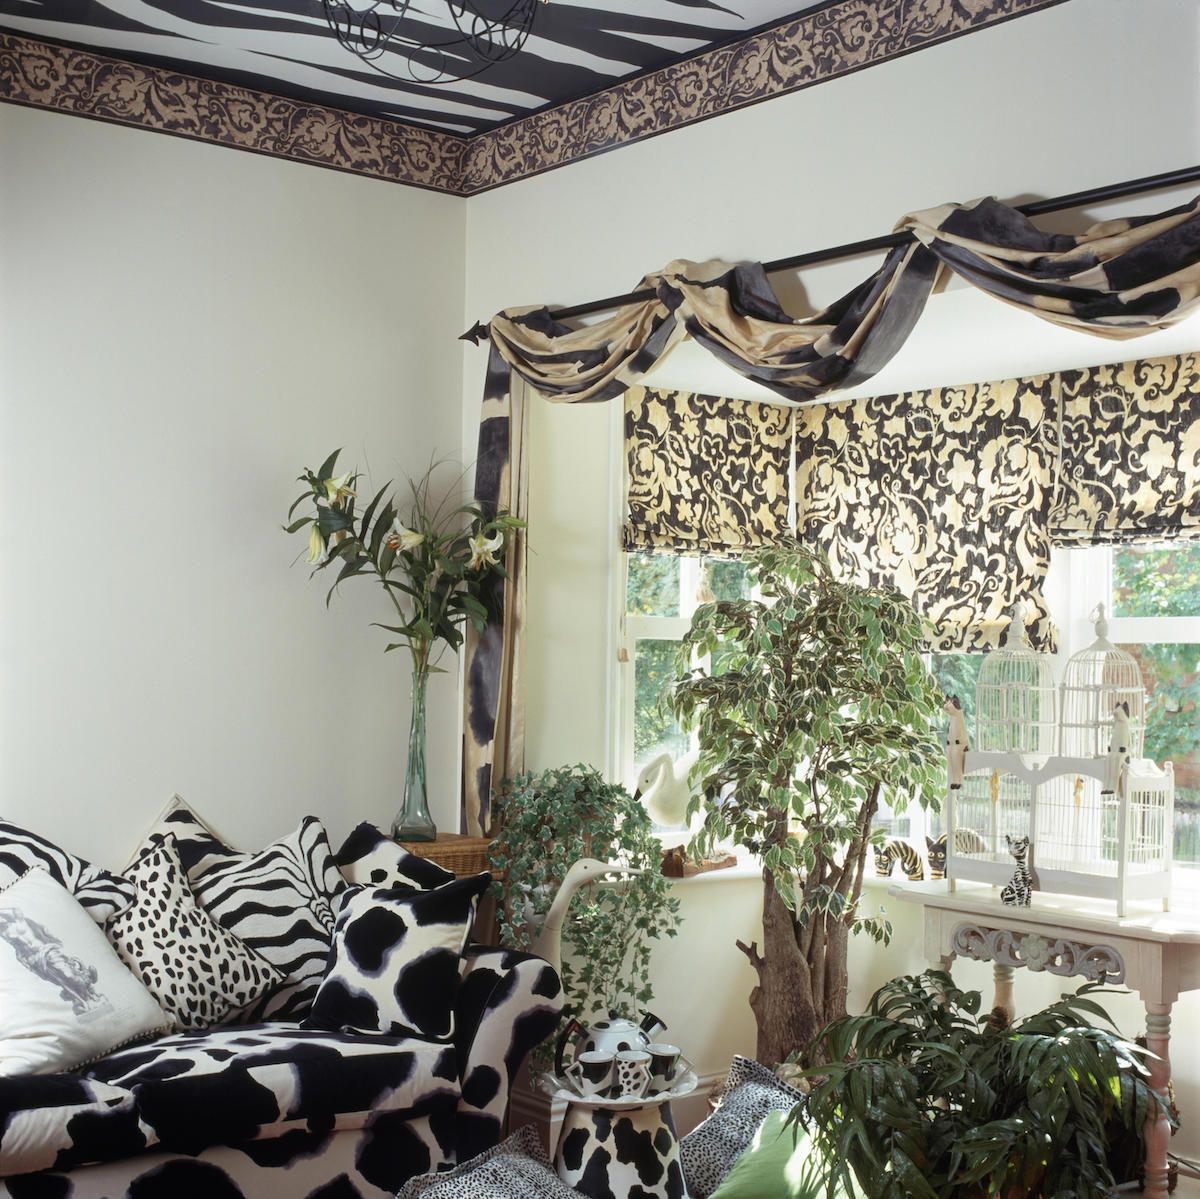 Sofá y cojines con estampado de animales en blanco y negro en la sala de estar de los años noventa con tela drapeada en el poste sobre la ventana